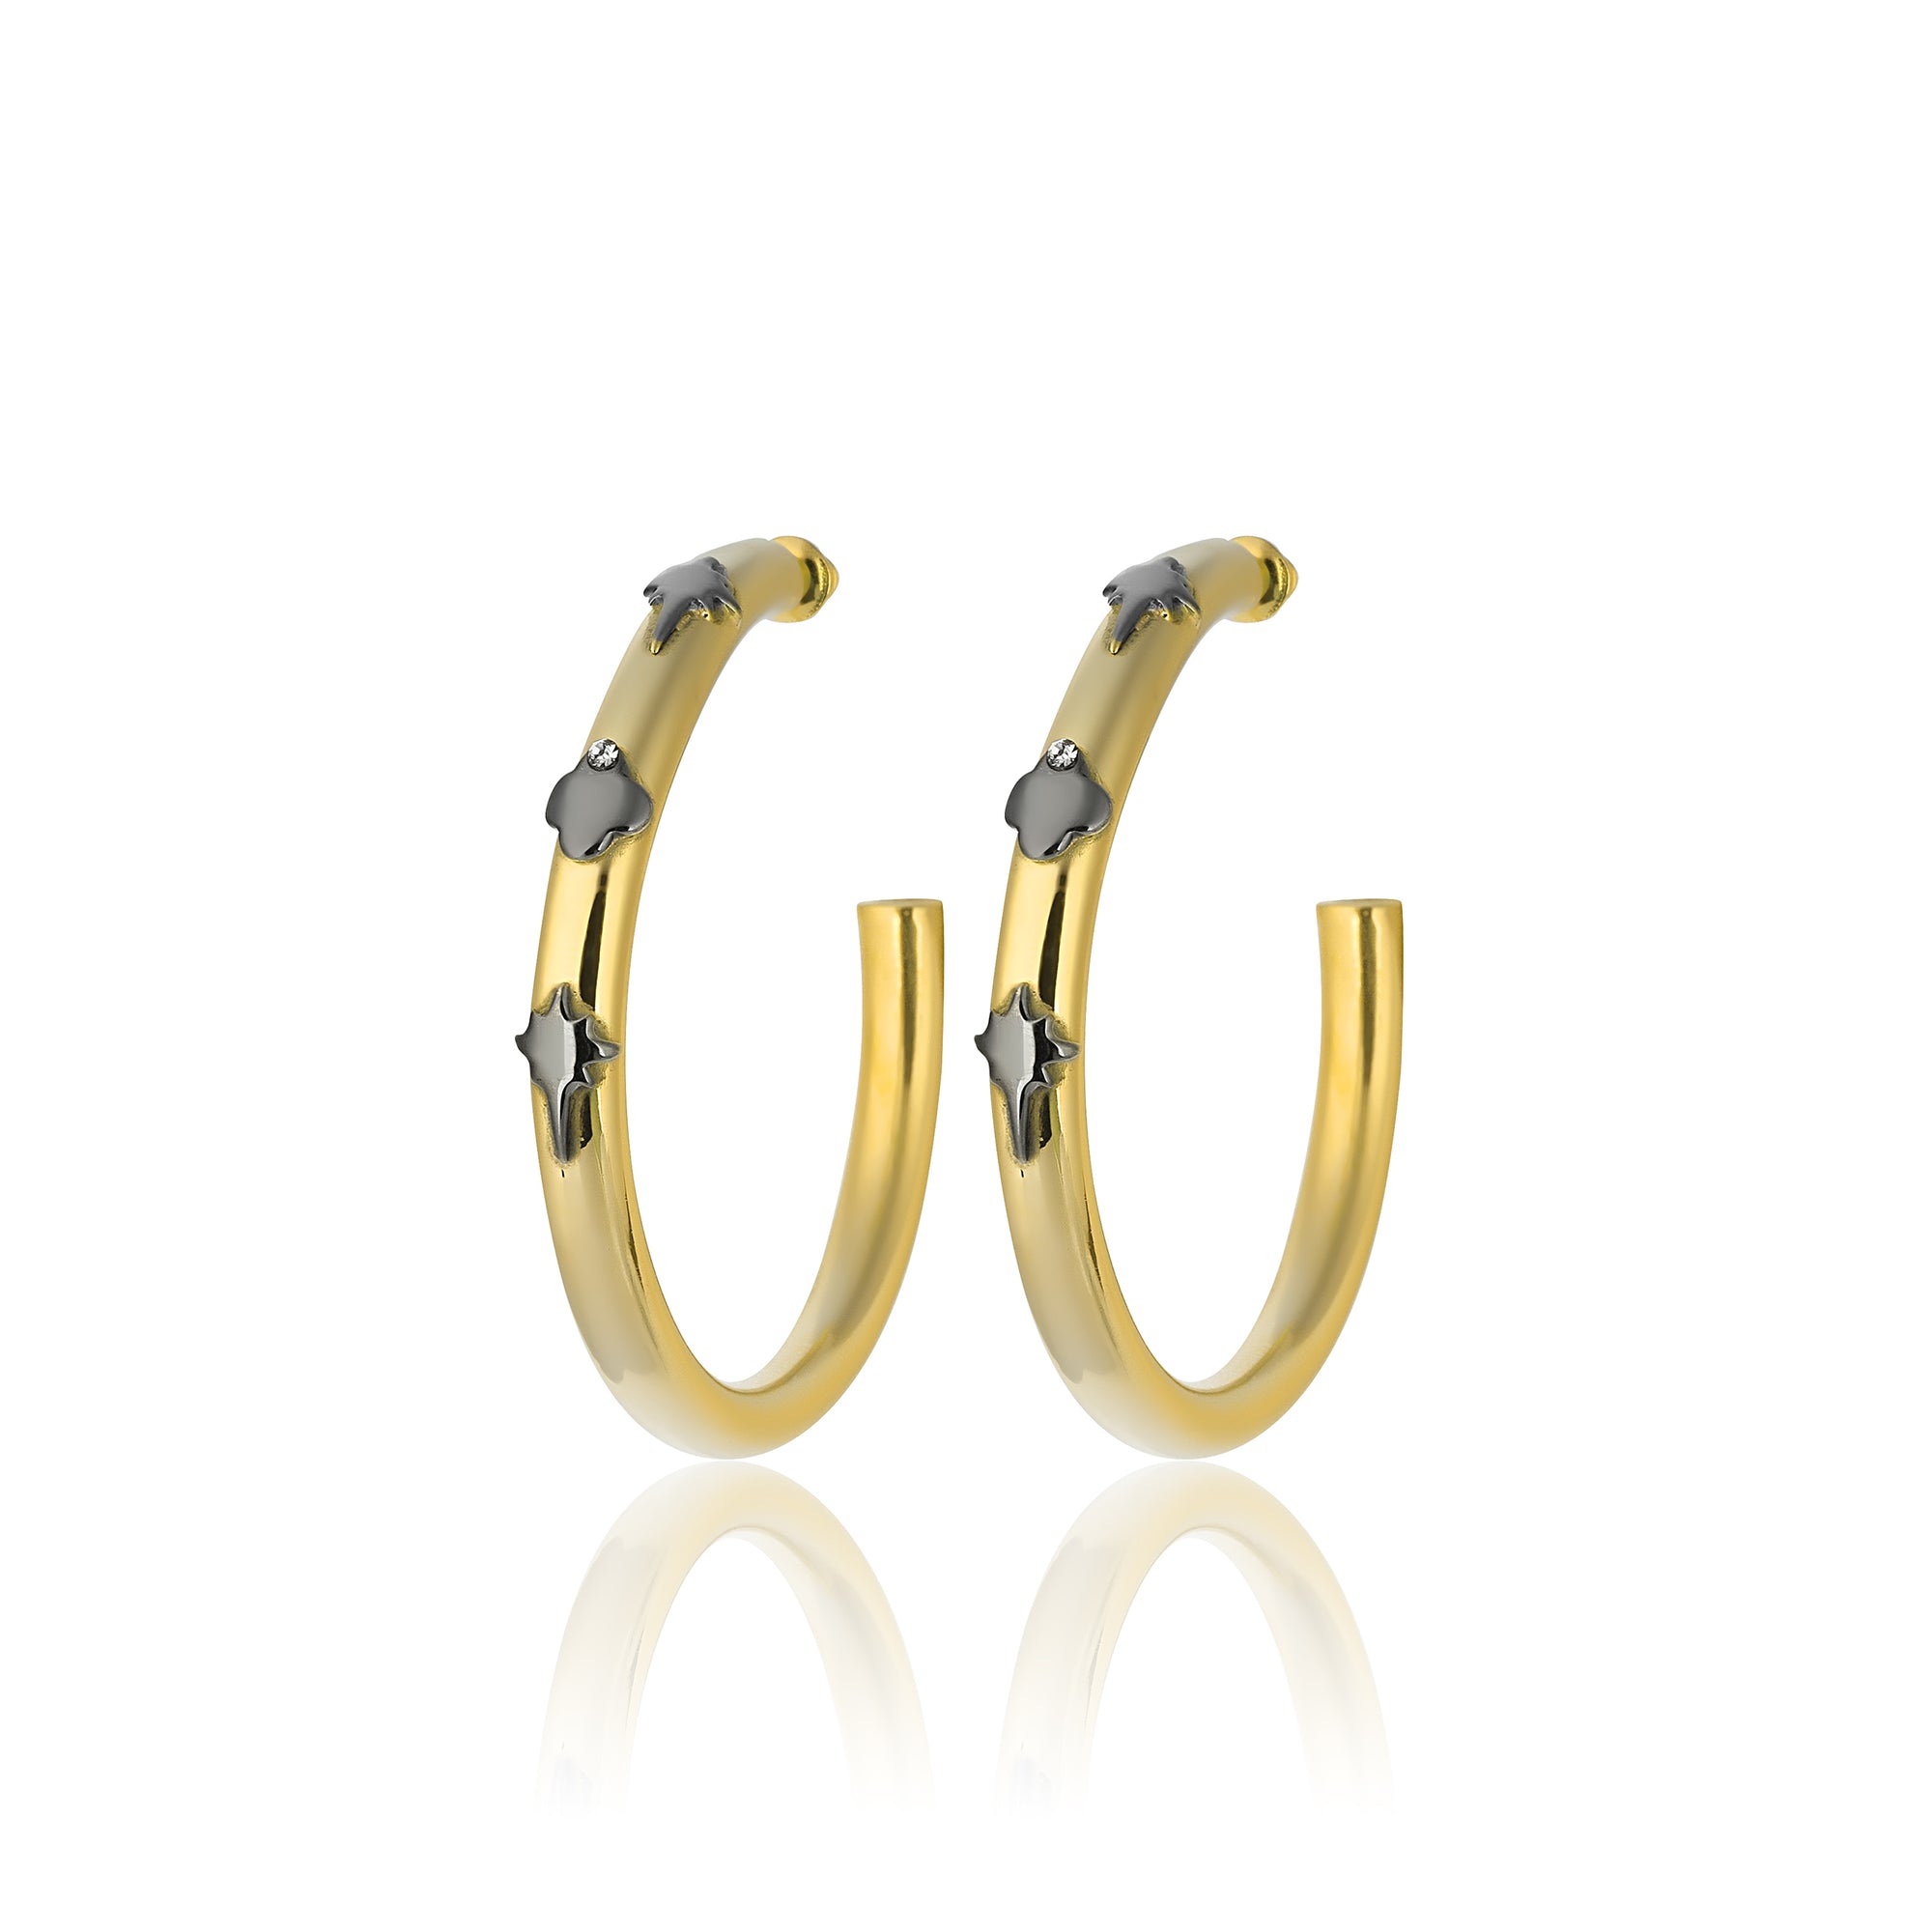 24K Gold plated hoop earrings costume jewelry large hoops